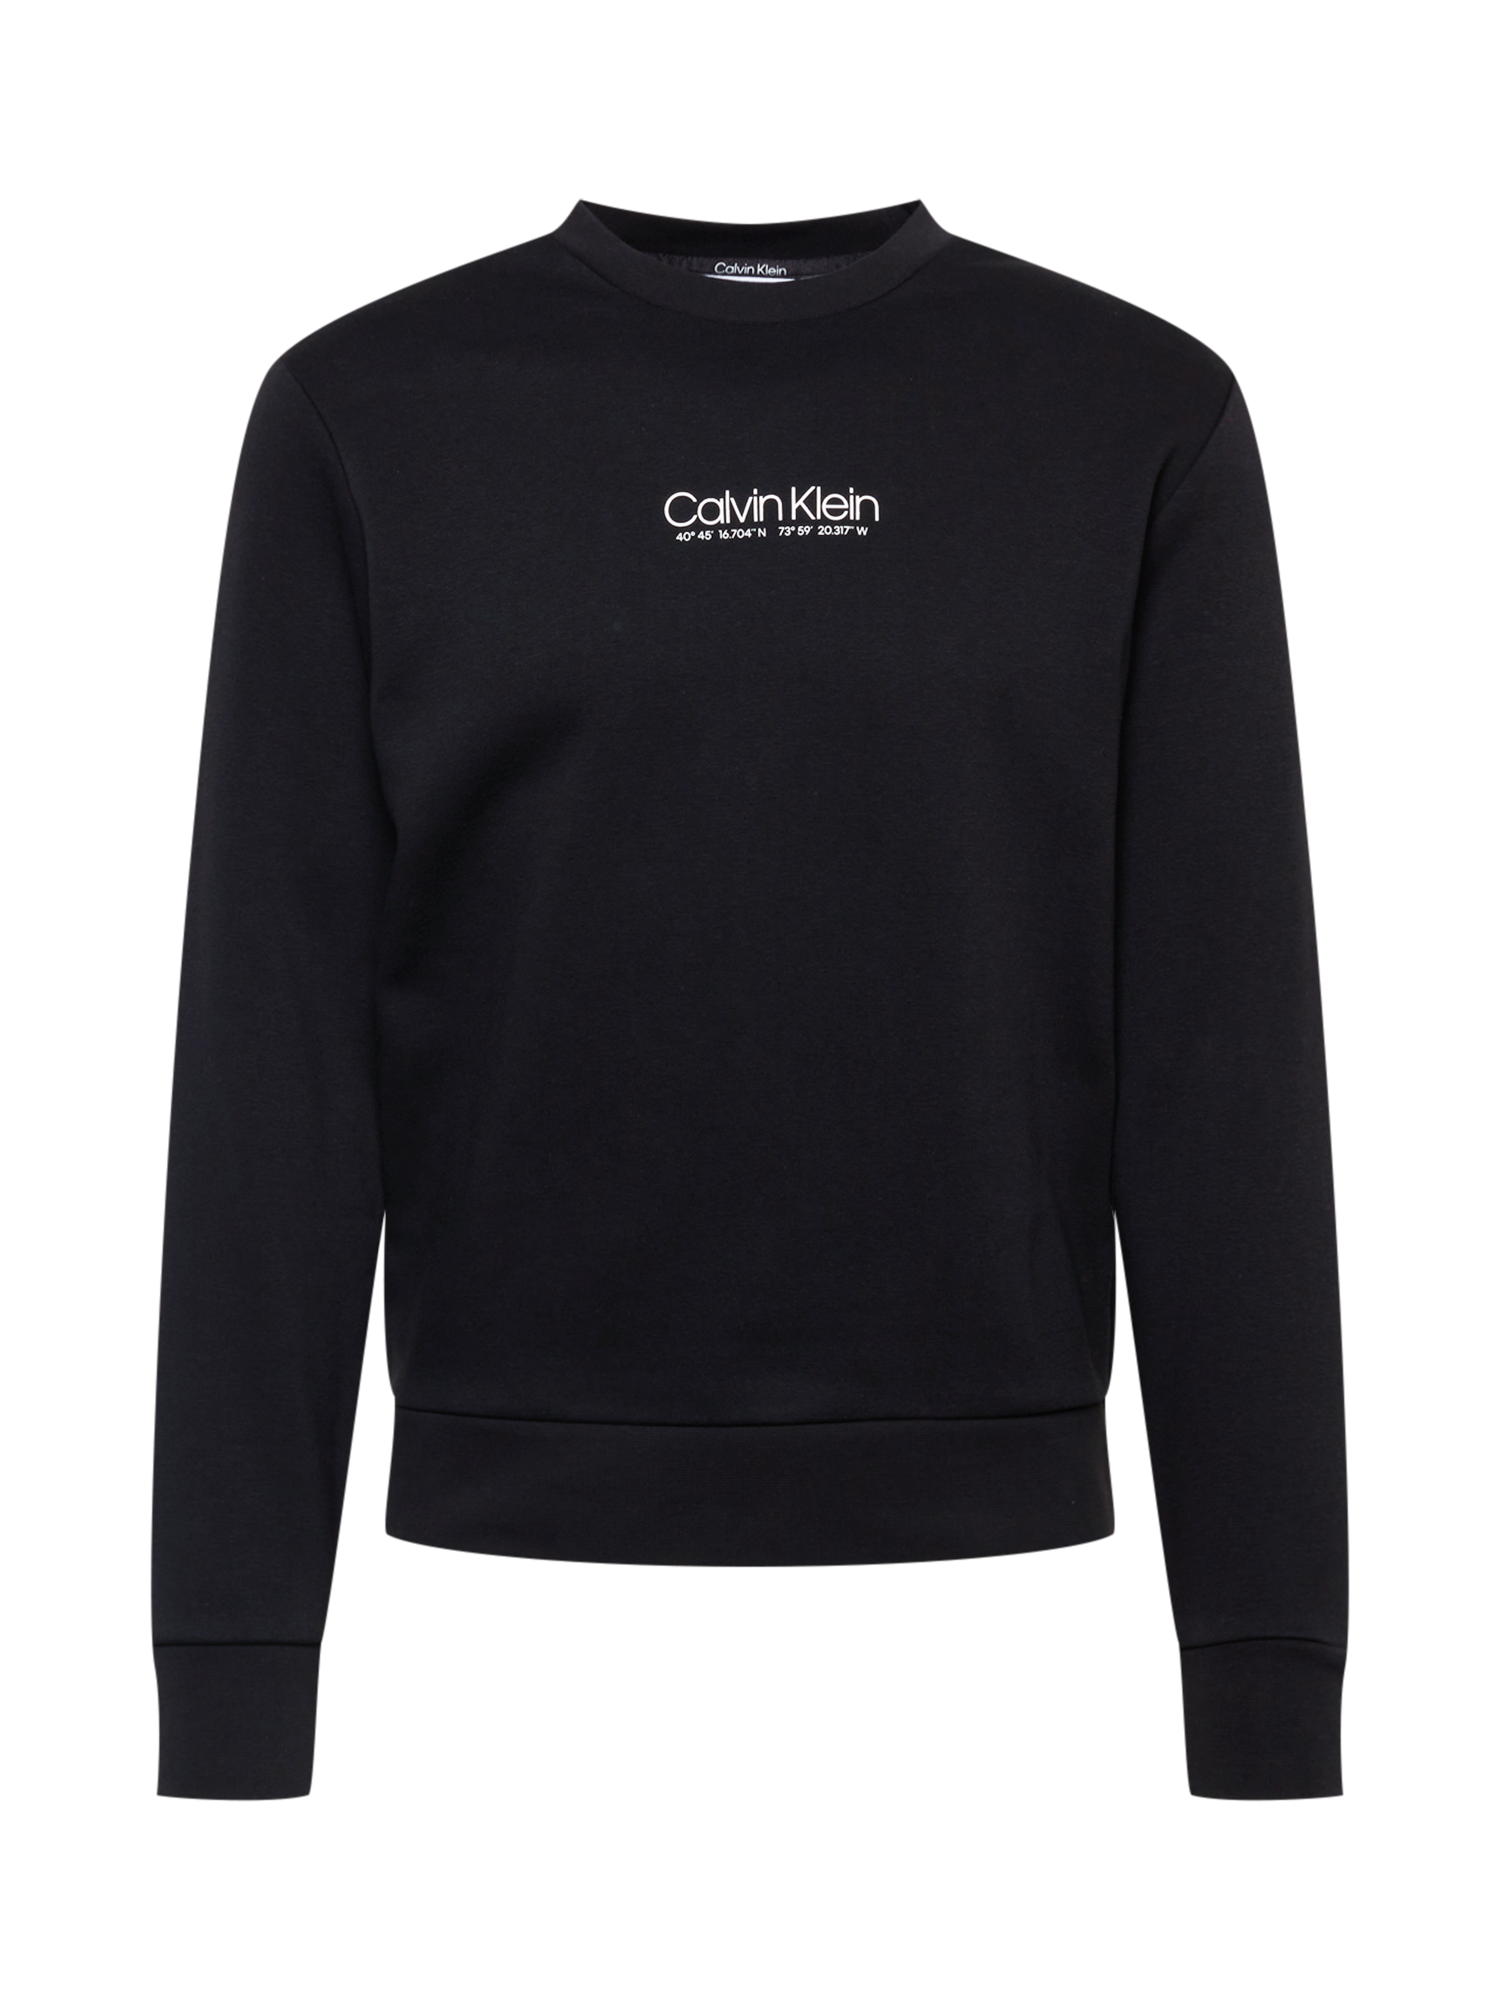 Bluzy Odzież Calvin Klein Bluzka sportowa w kolorze Czarnym 